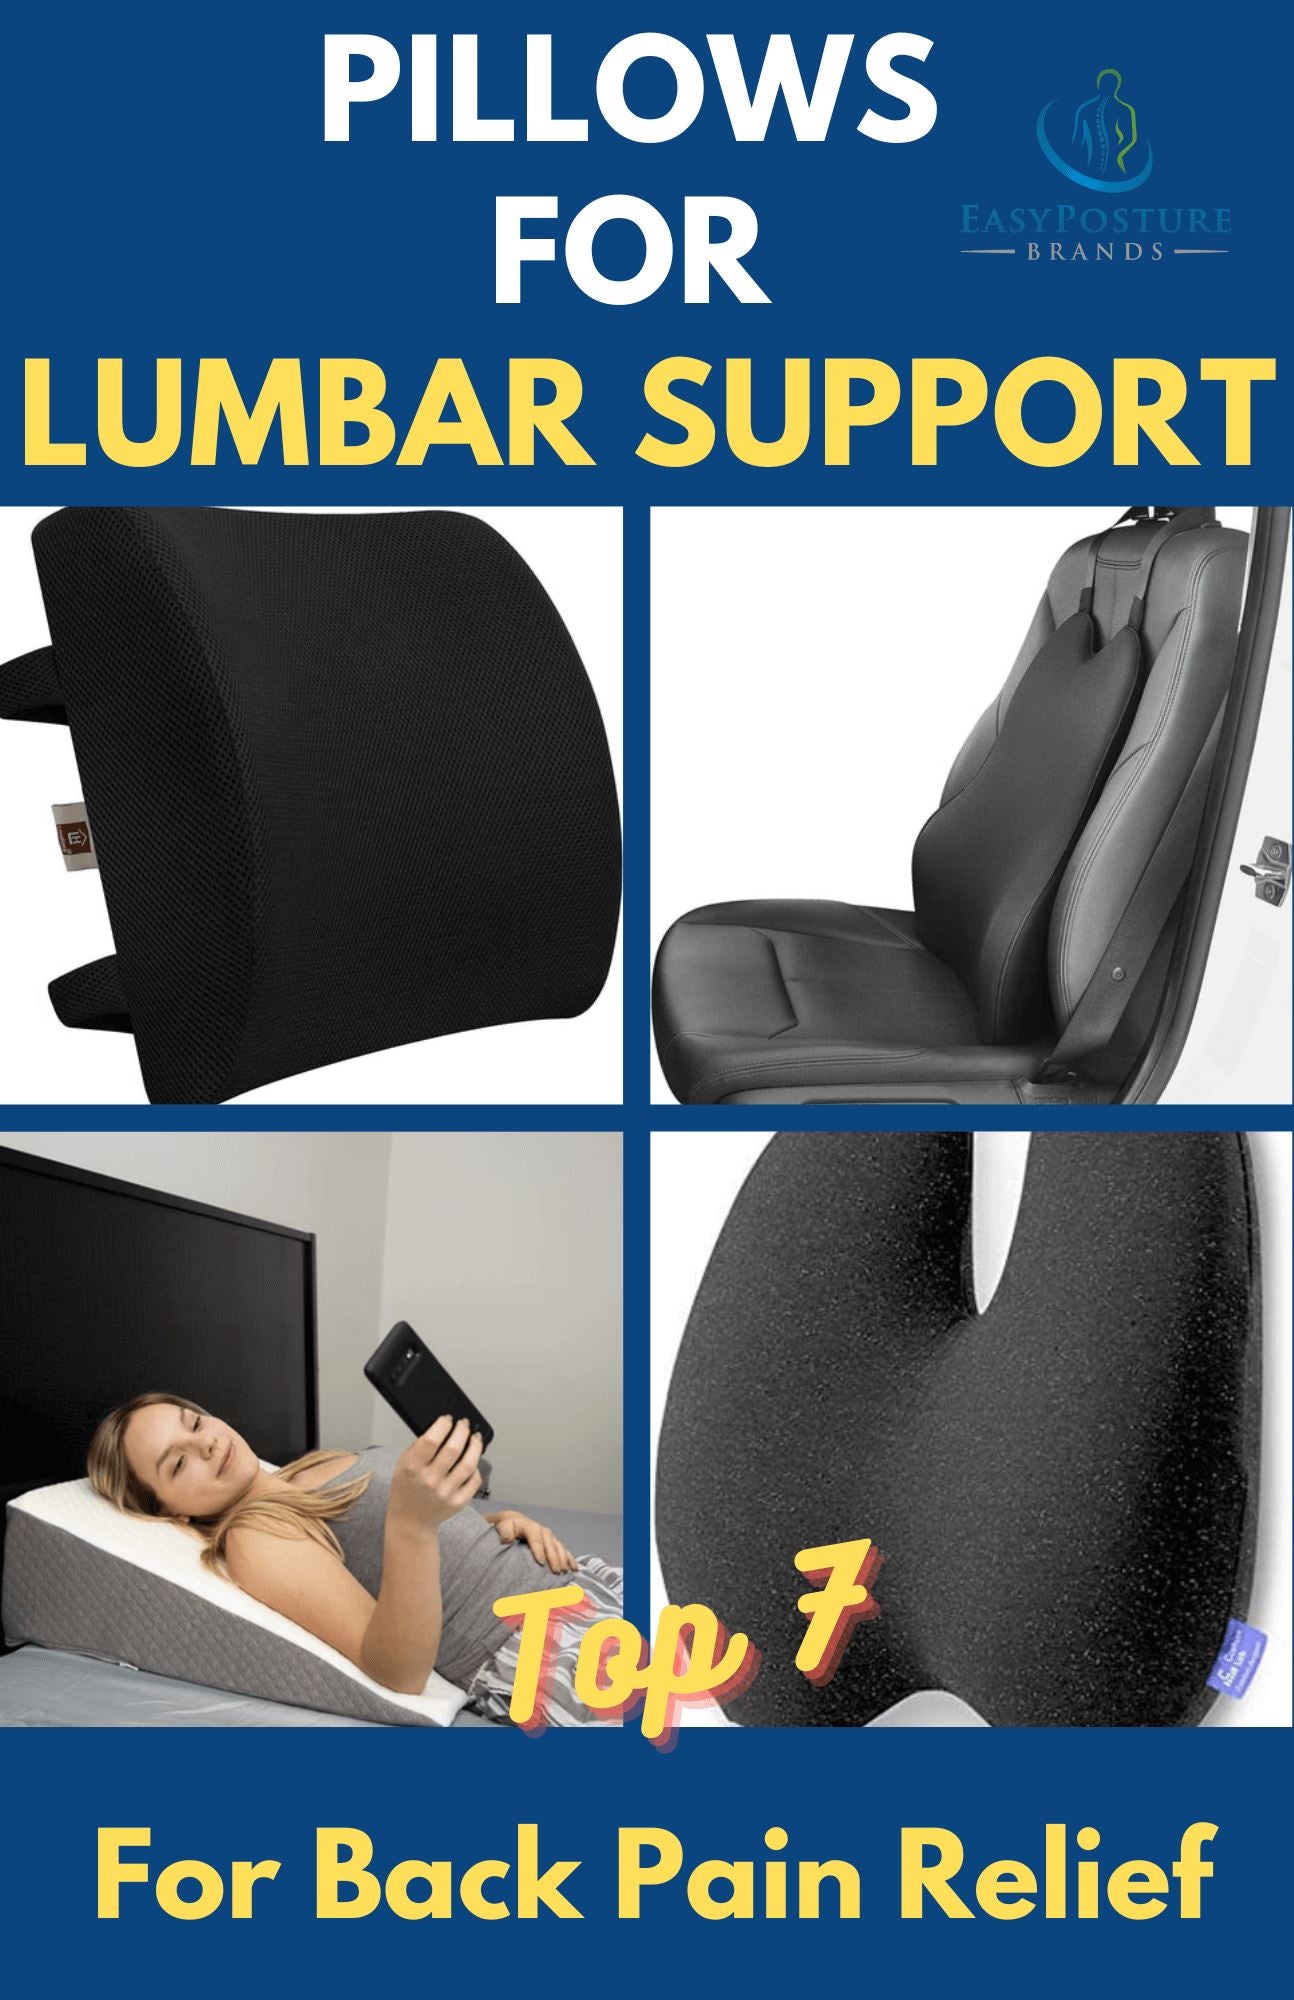 http://www.easyposturebrands.com/cdn/shop/articles/pillows_for_lumbar_support_1.jpg?v=1661574640